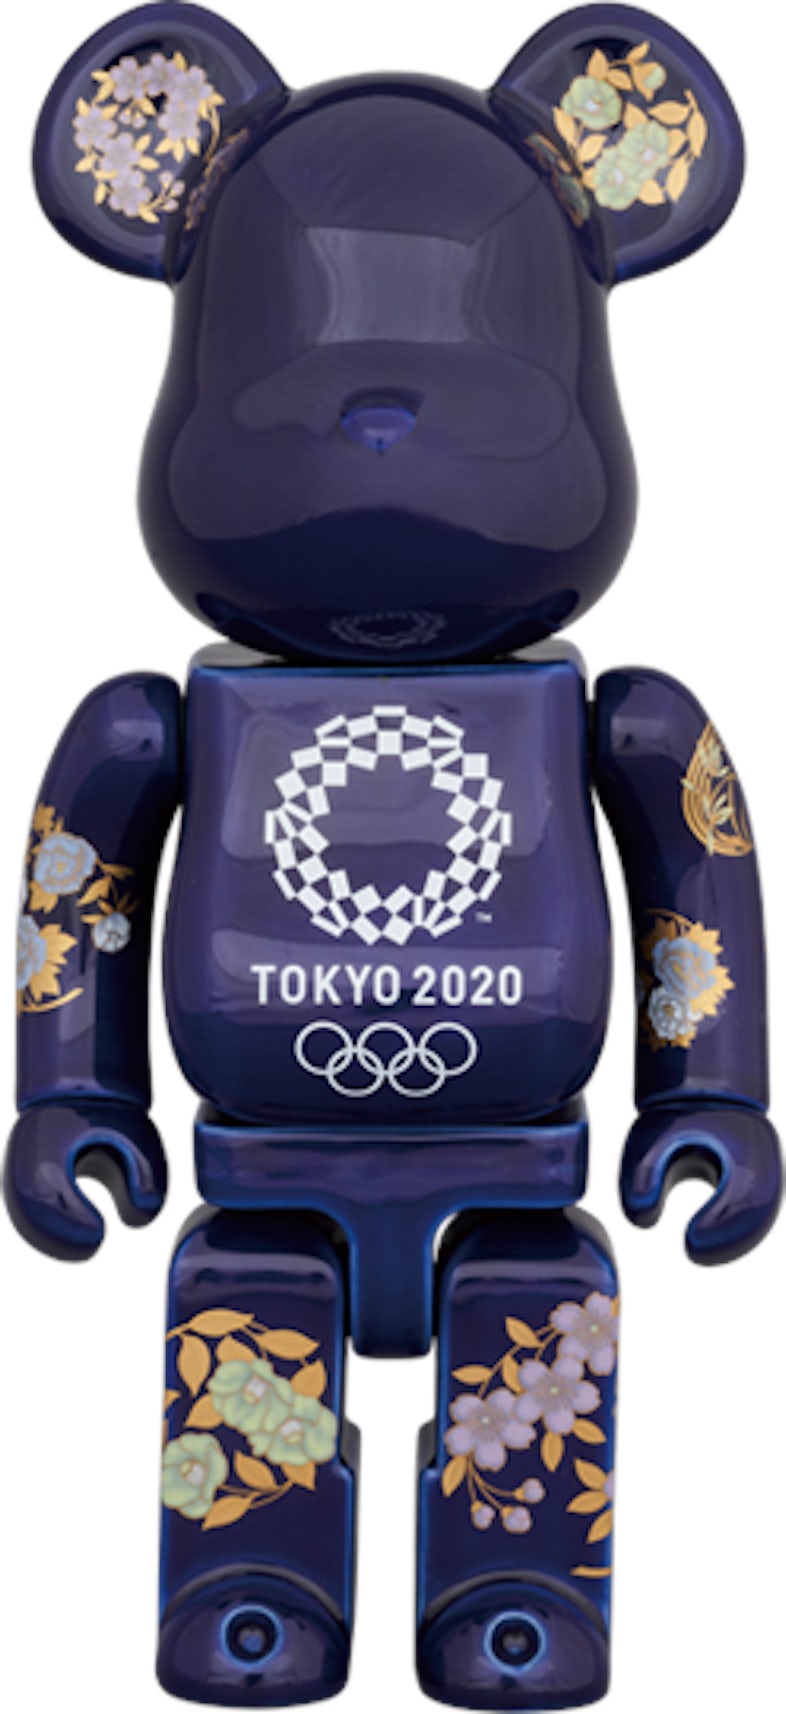 新品未開封 BE@RBRICK 400% 東京 2020 オリンピック